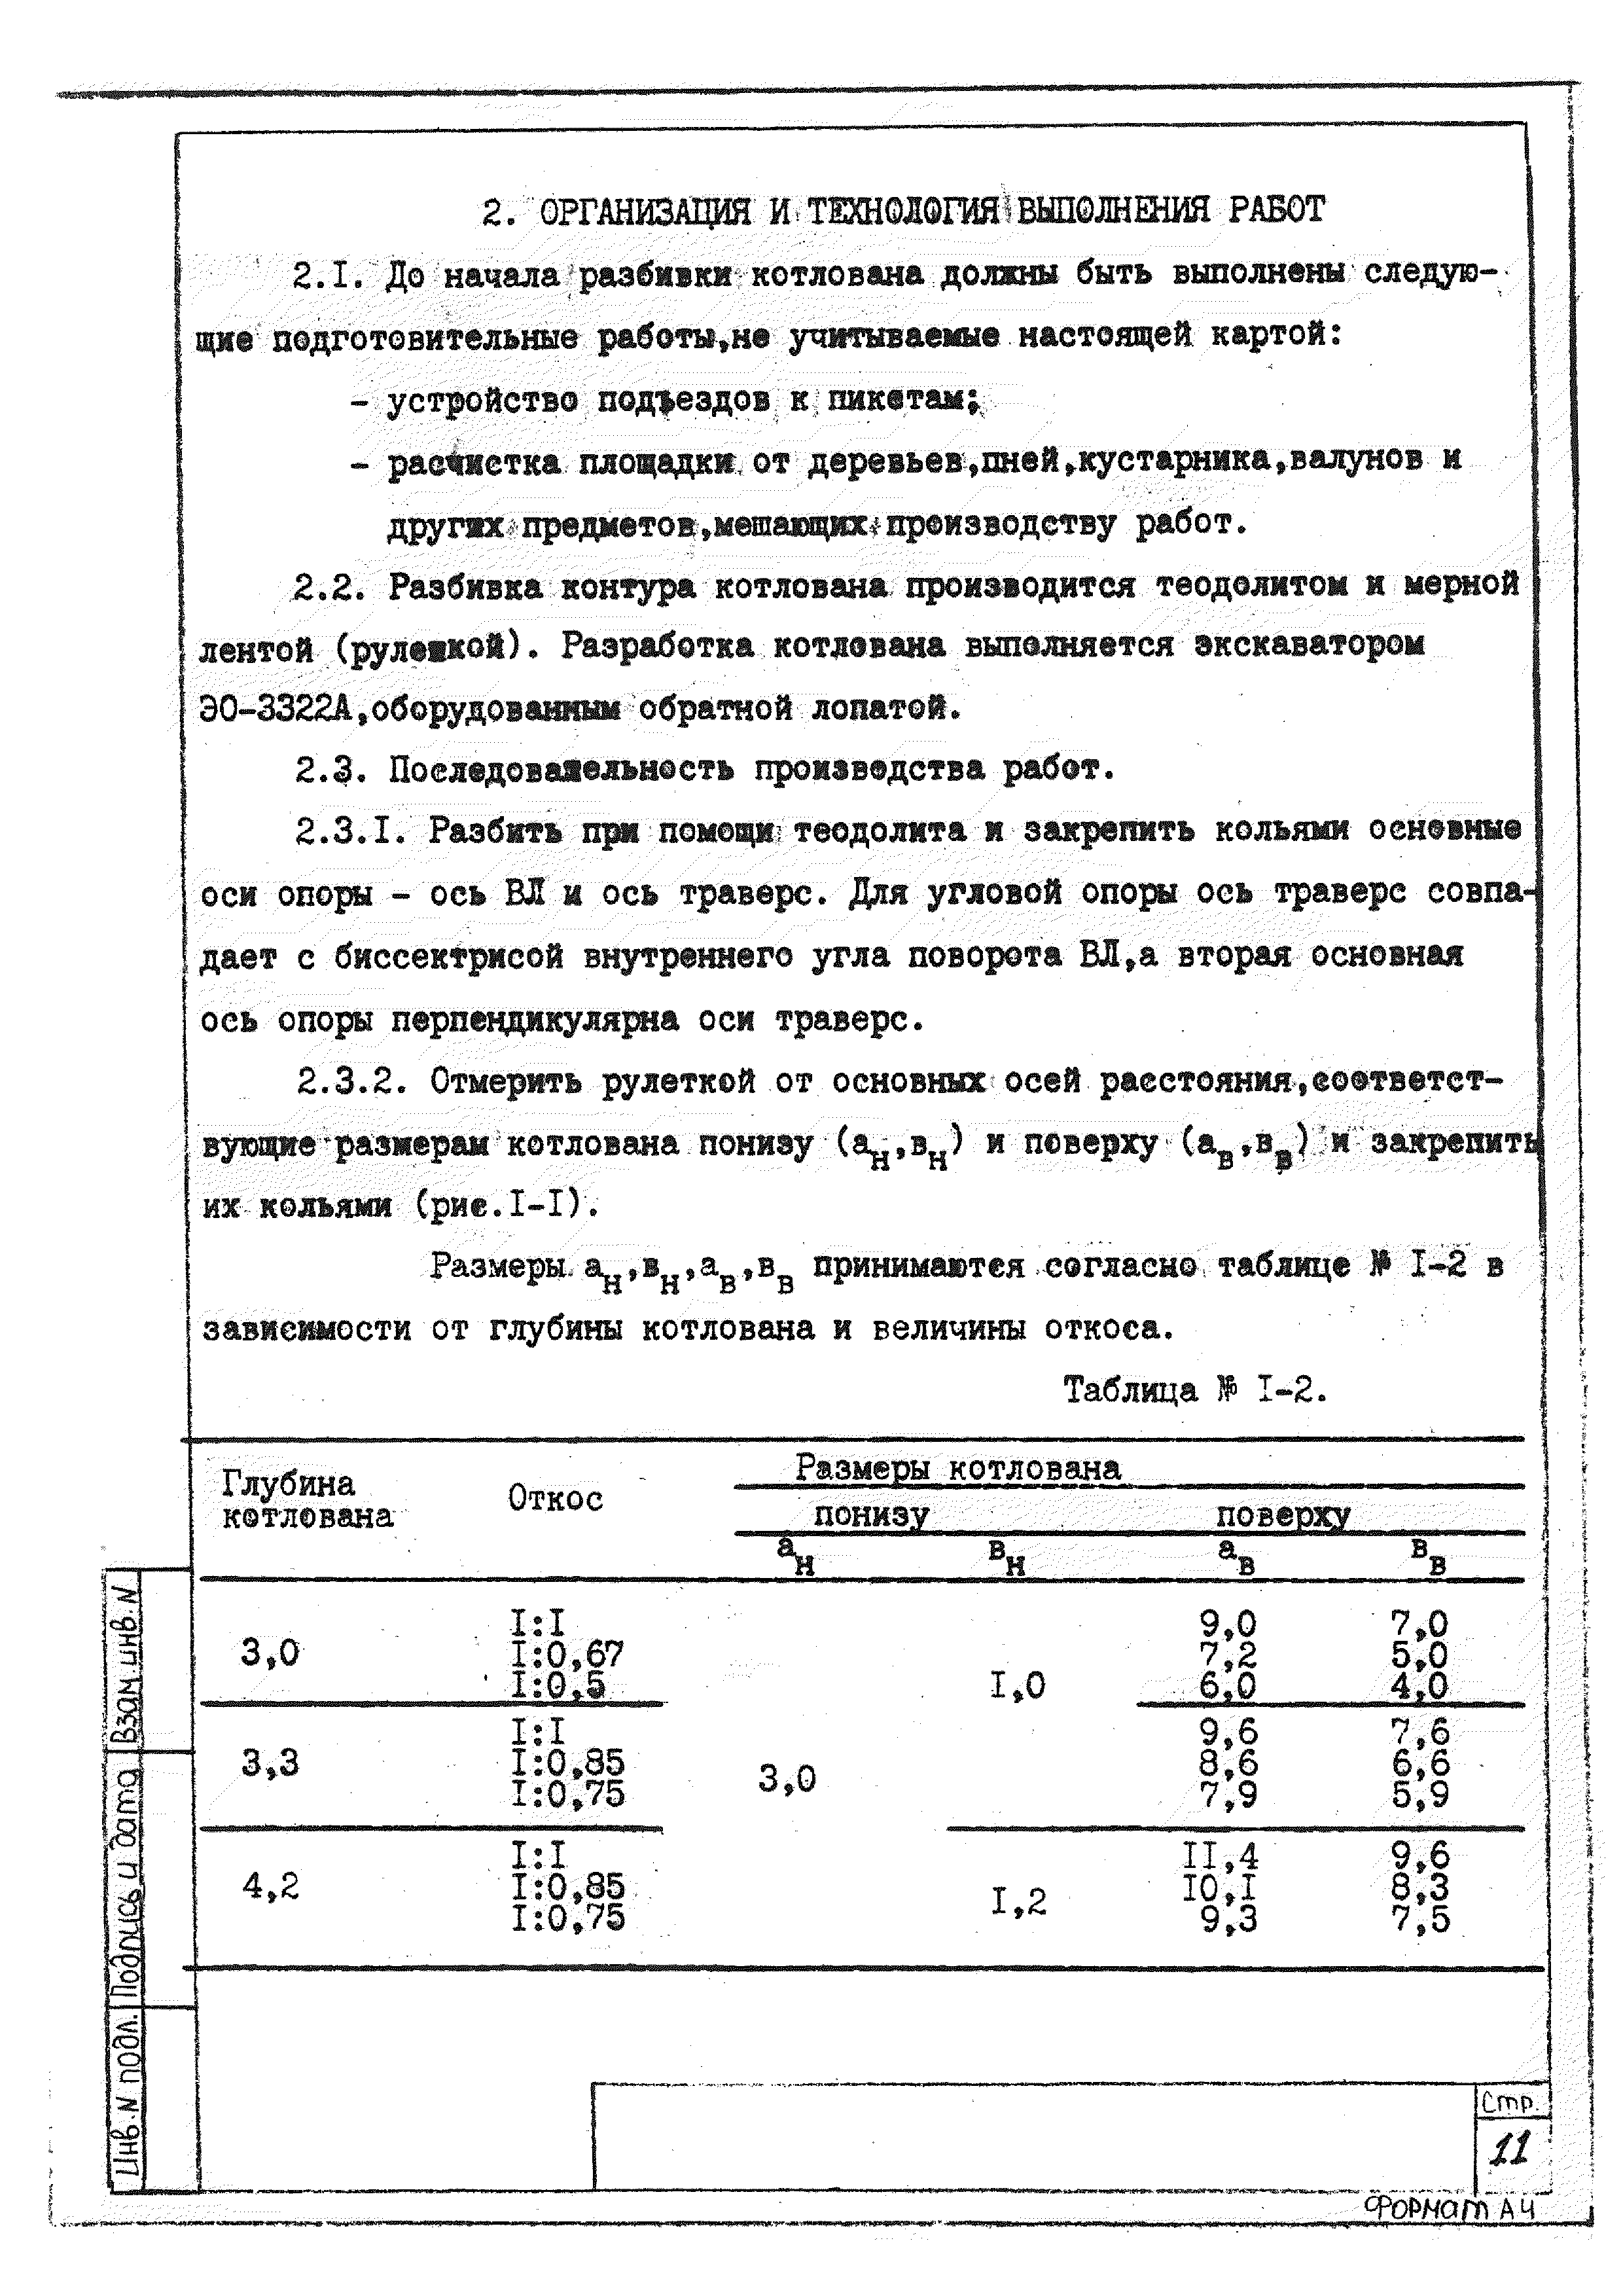 ТТК К-4-101-1